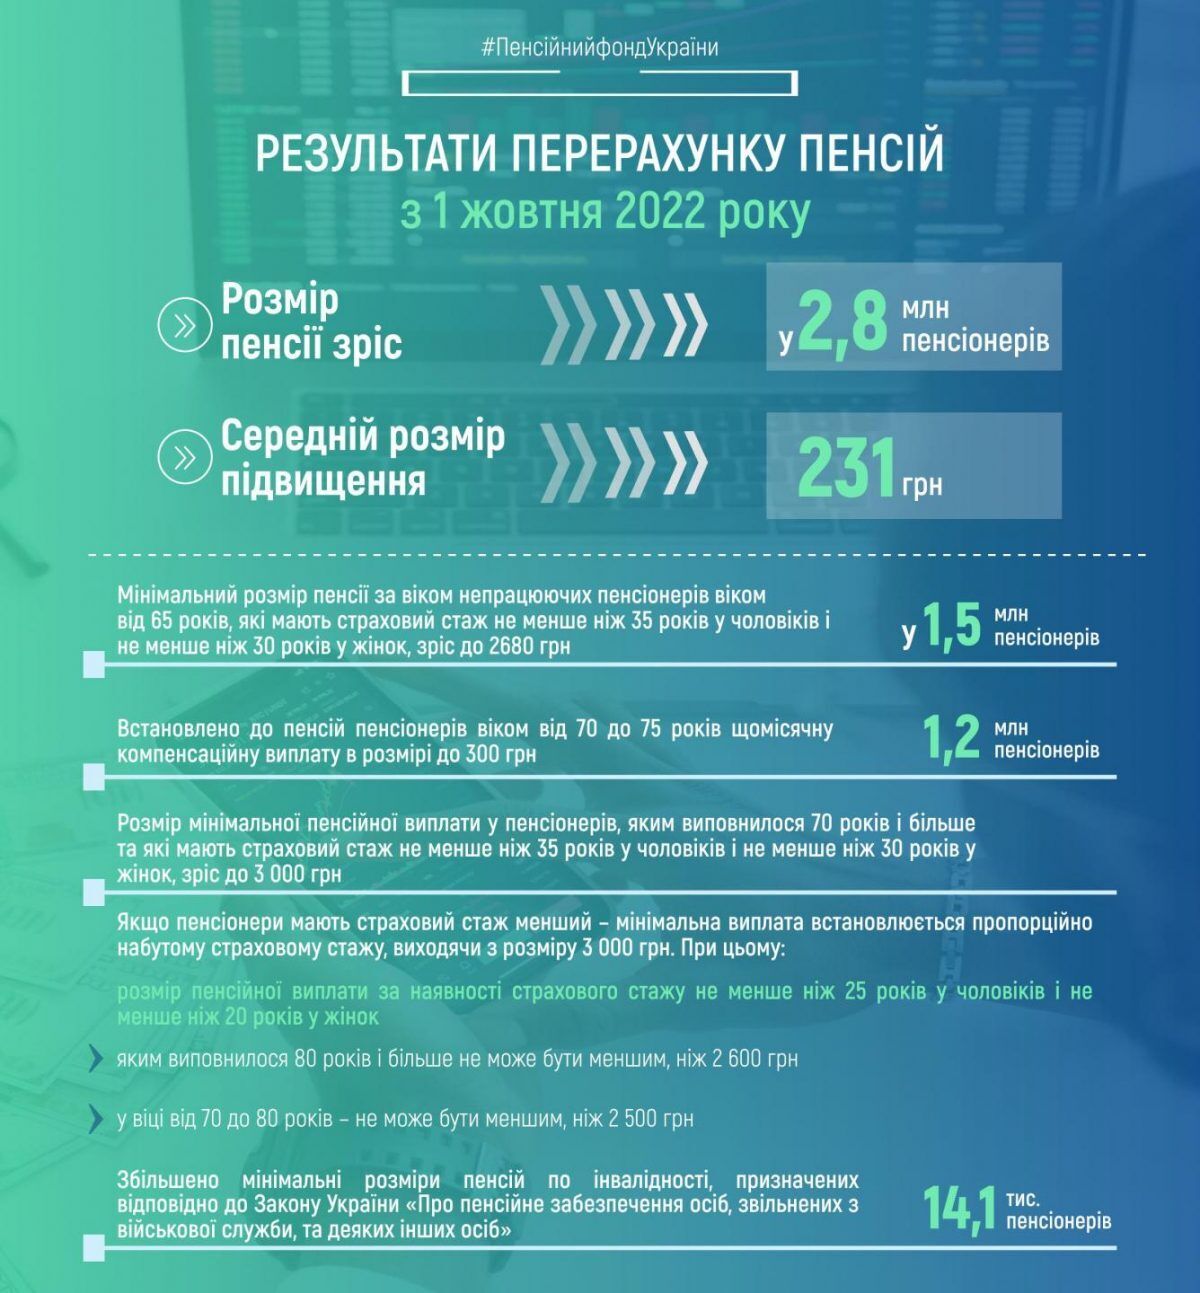 З 1 жовтня у 2,8 млн. українських пенсіонерів зросли пенсії